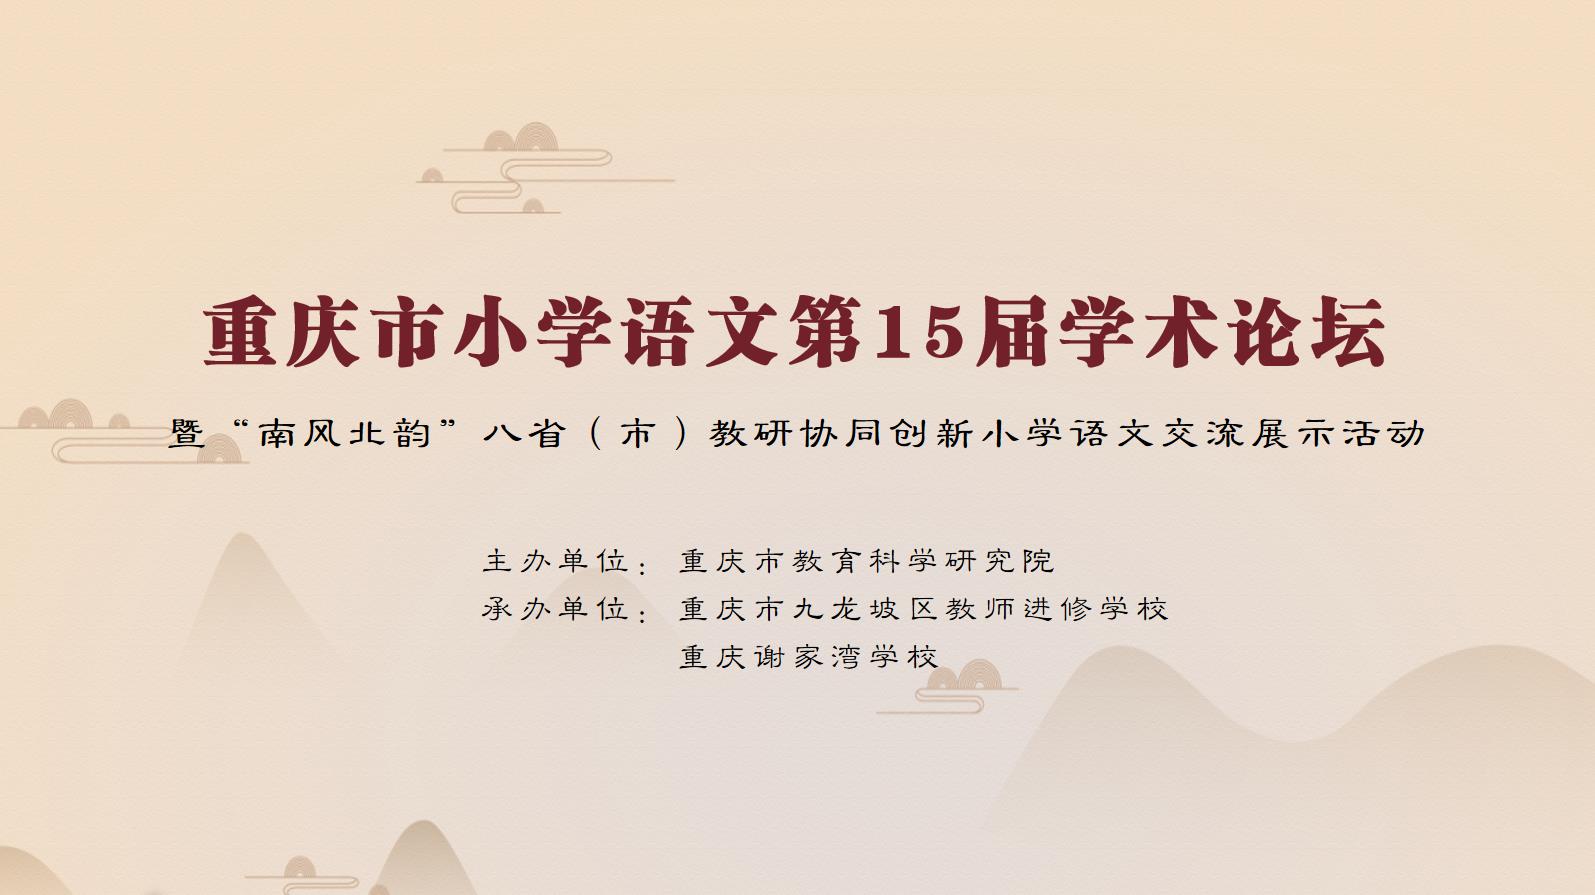 【免费观看】2023年重庆市小学语文第15届学术论坛